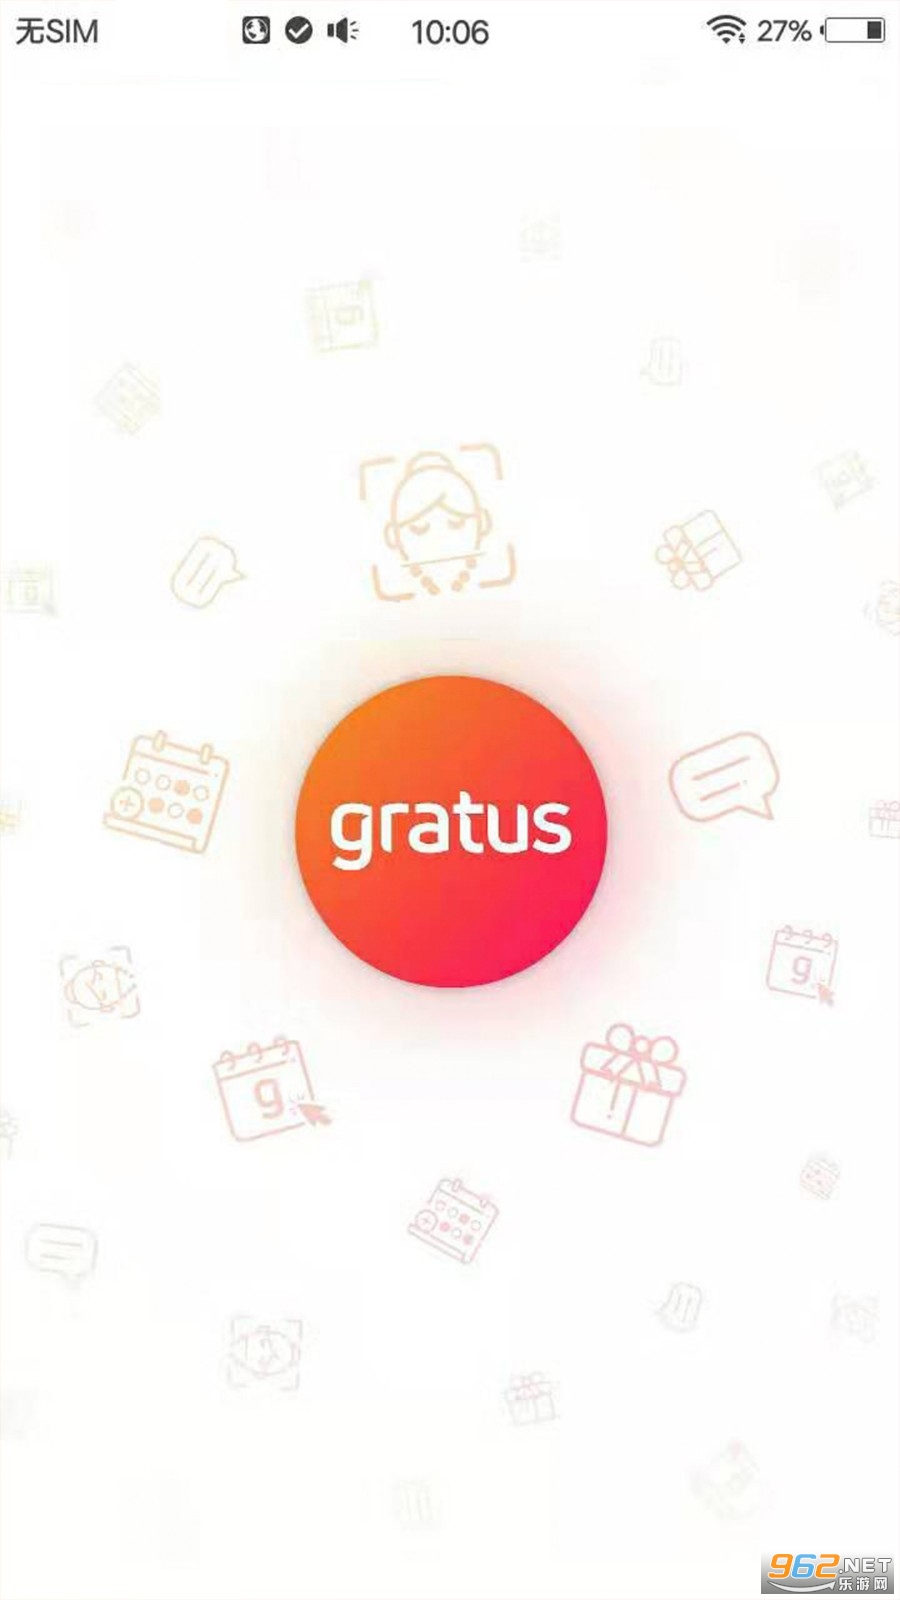 gratus